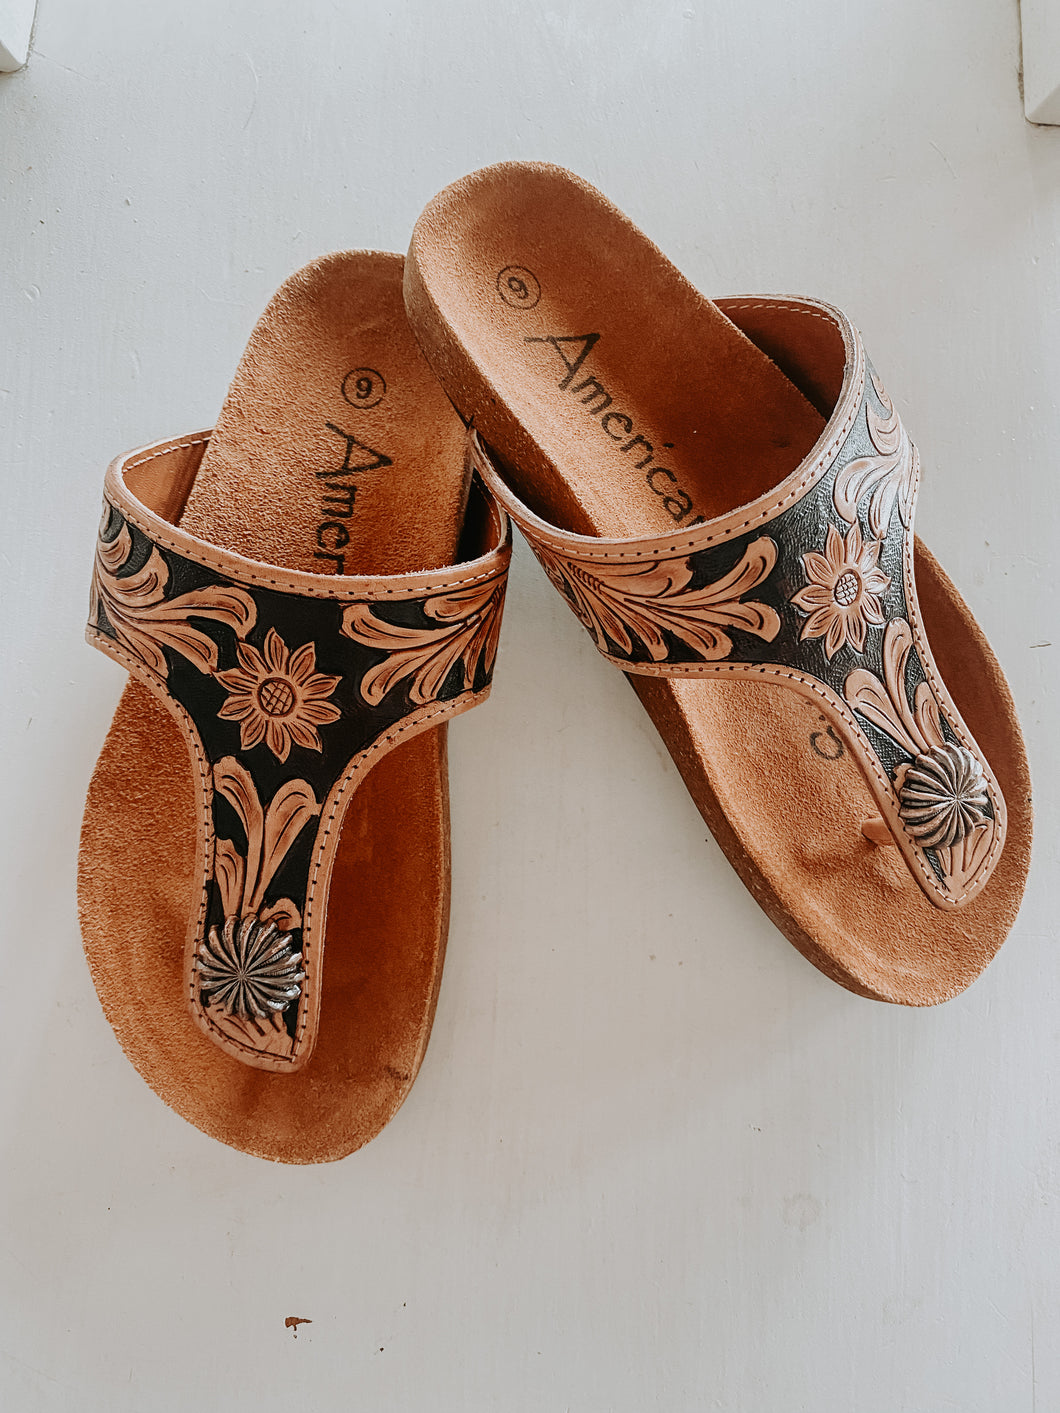 Tooled Leather Sandal